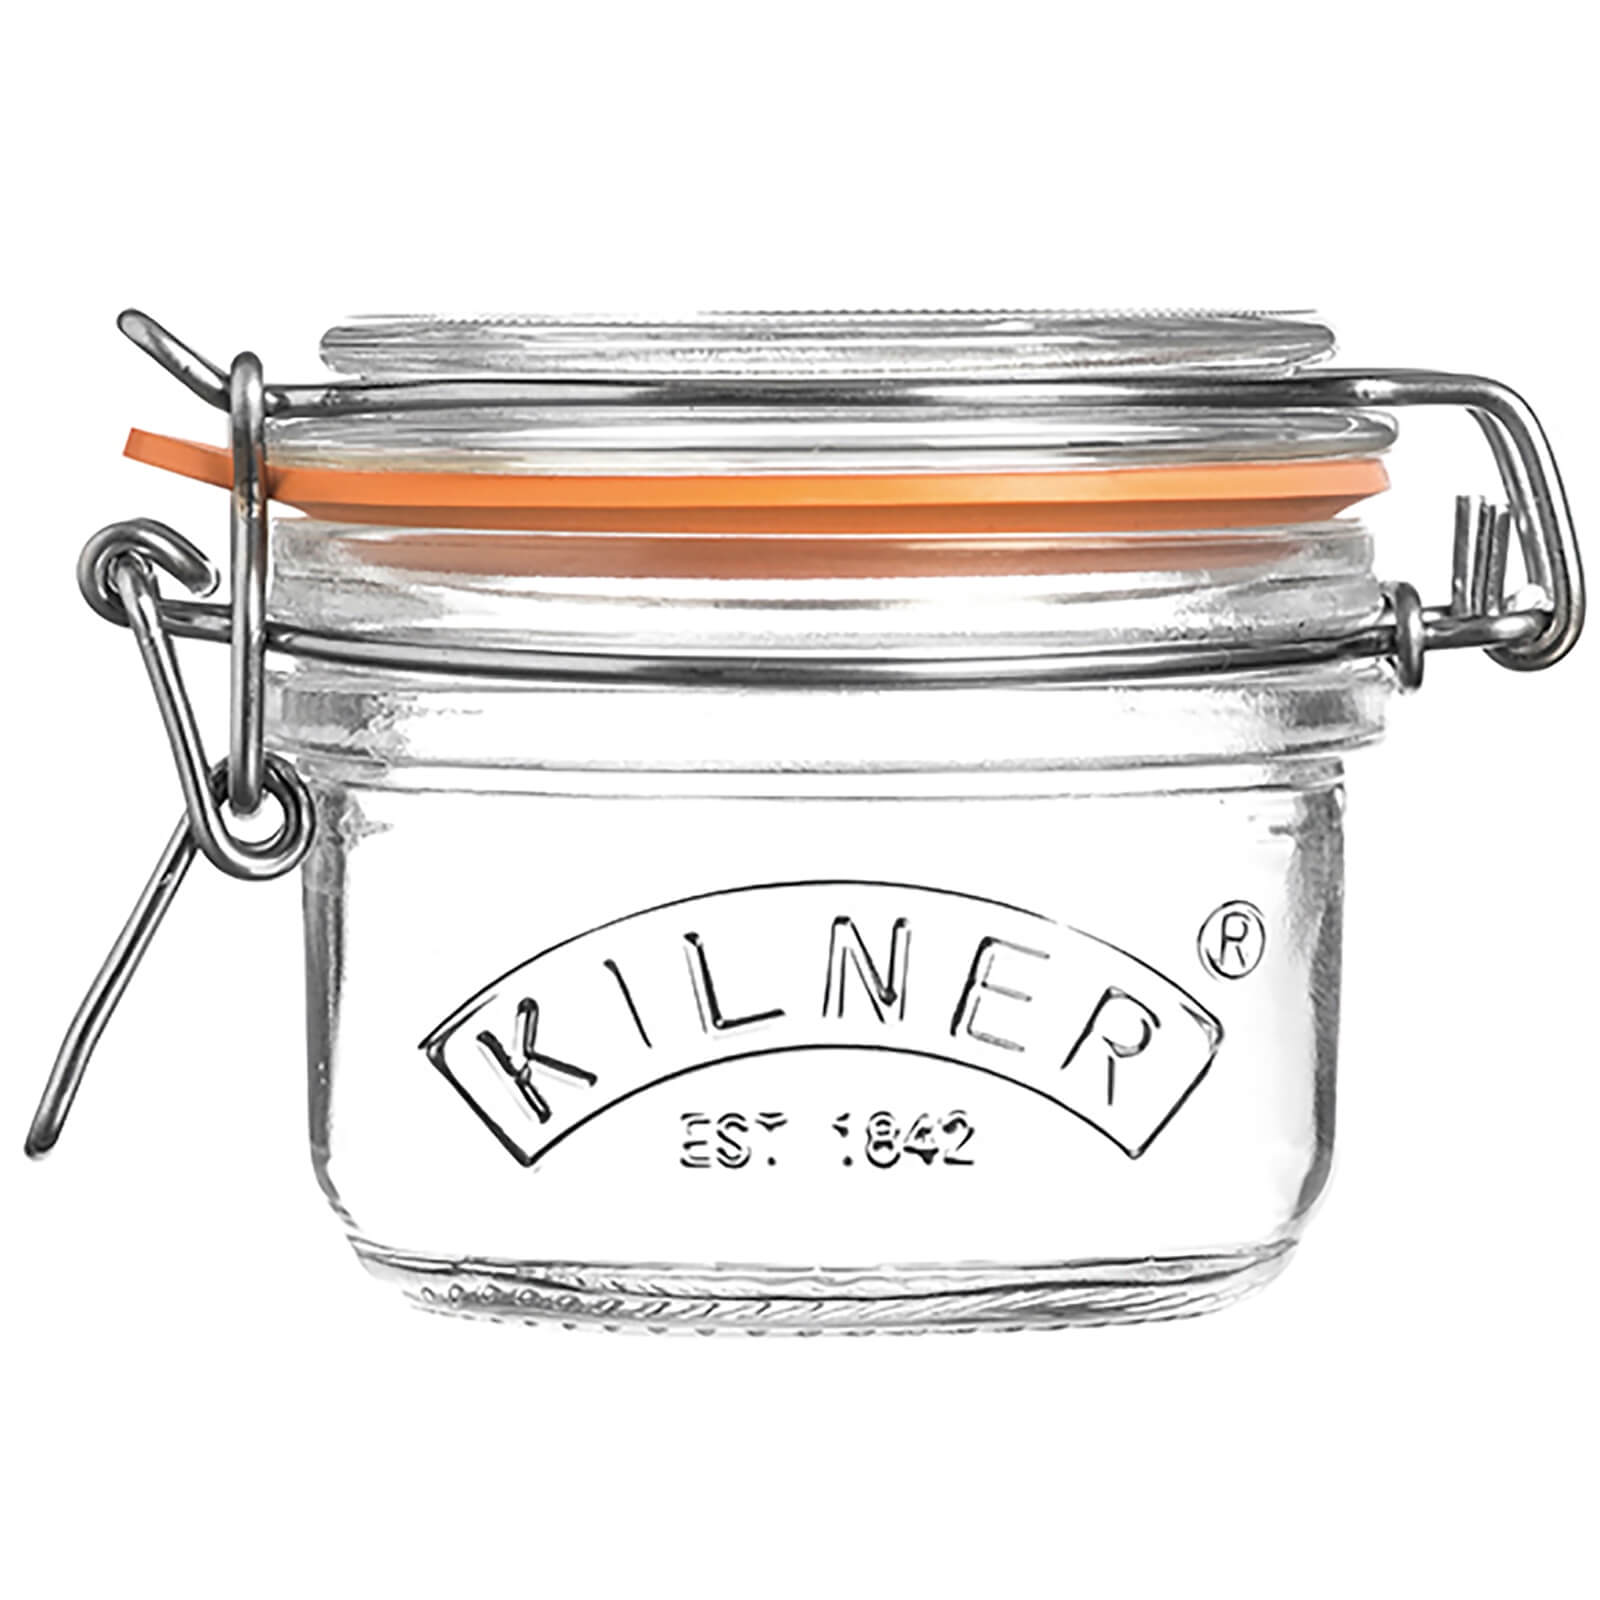 Kilner Clip Top Round Jar - 125ml